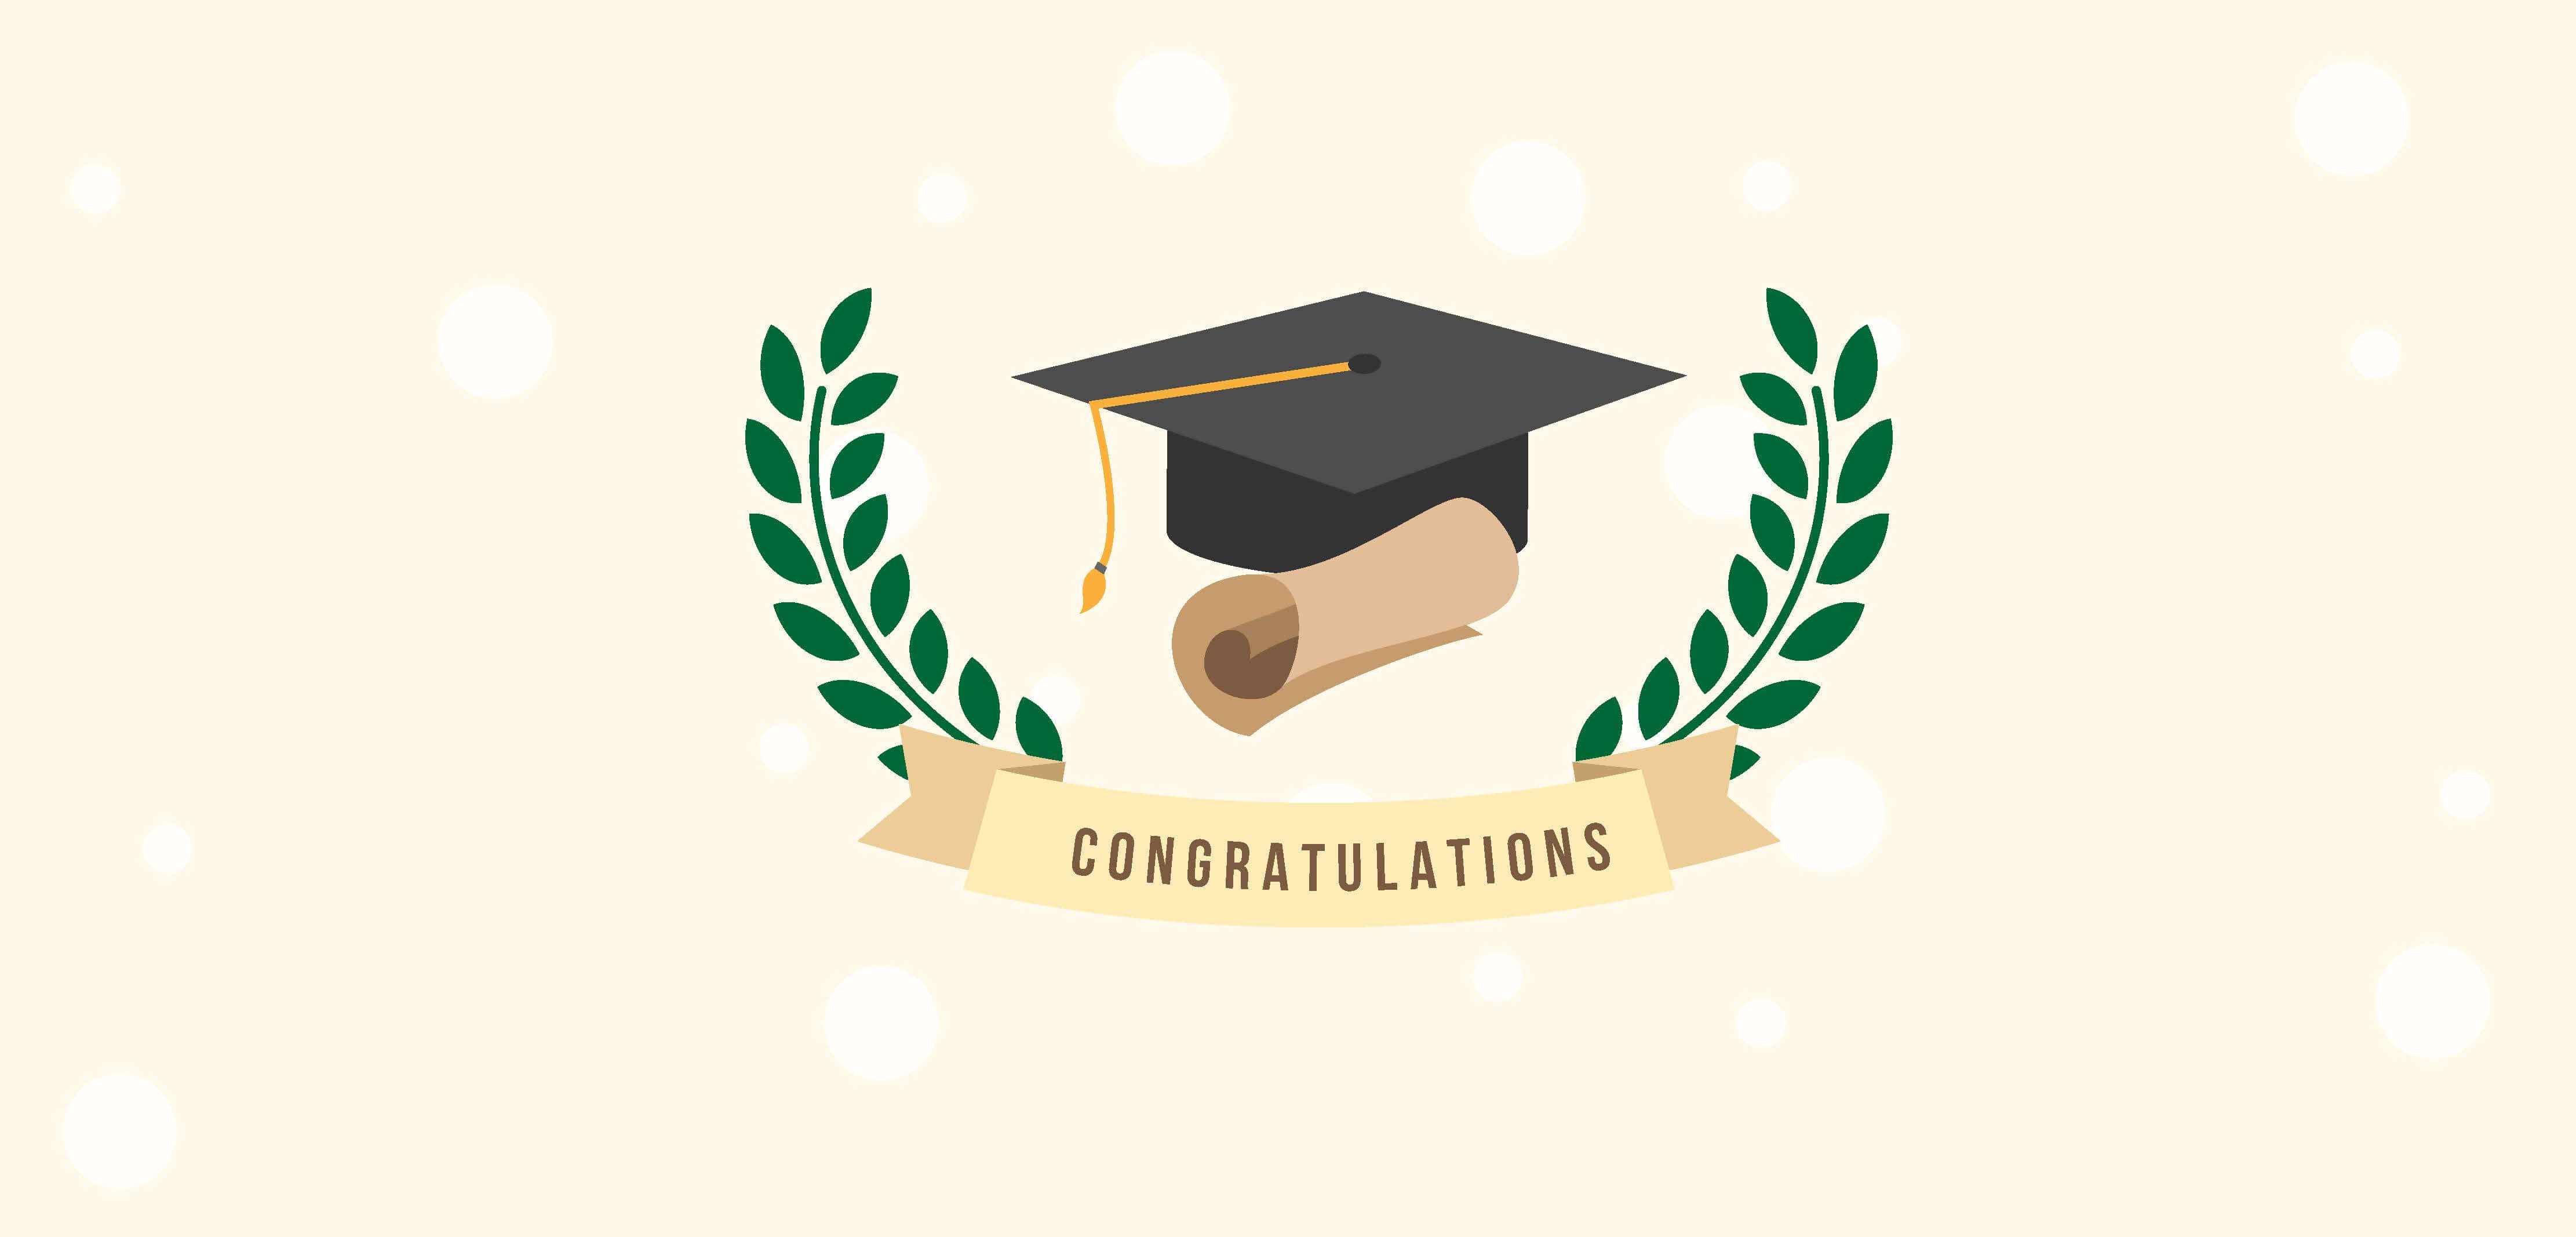 Congratulations graduates!